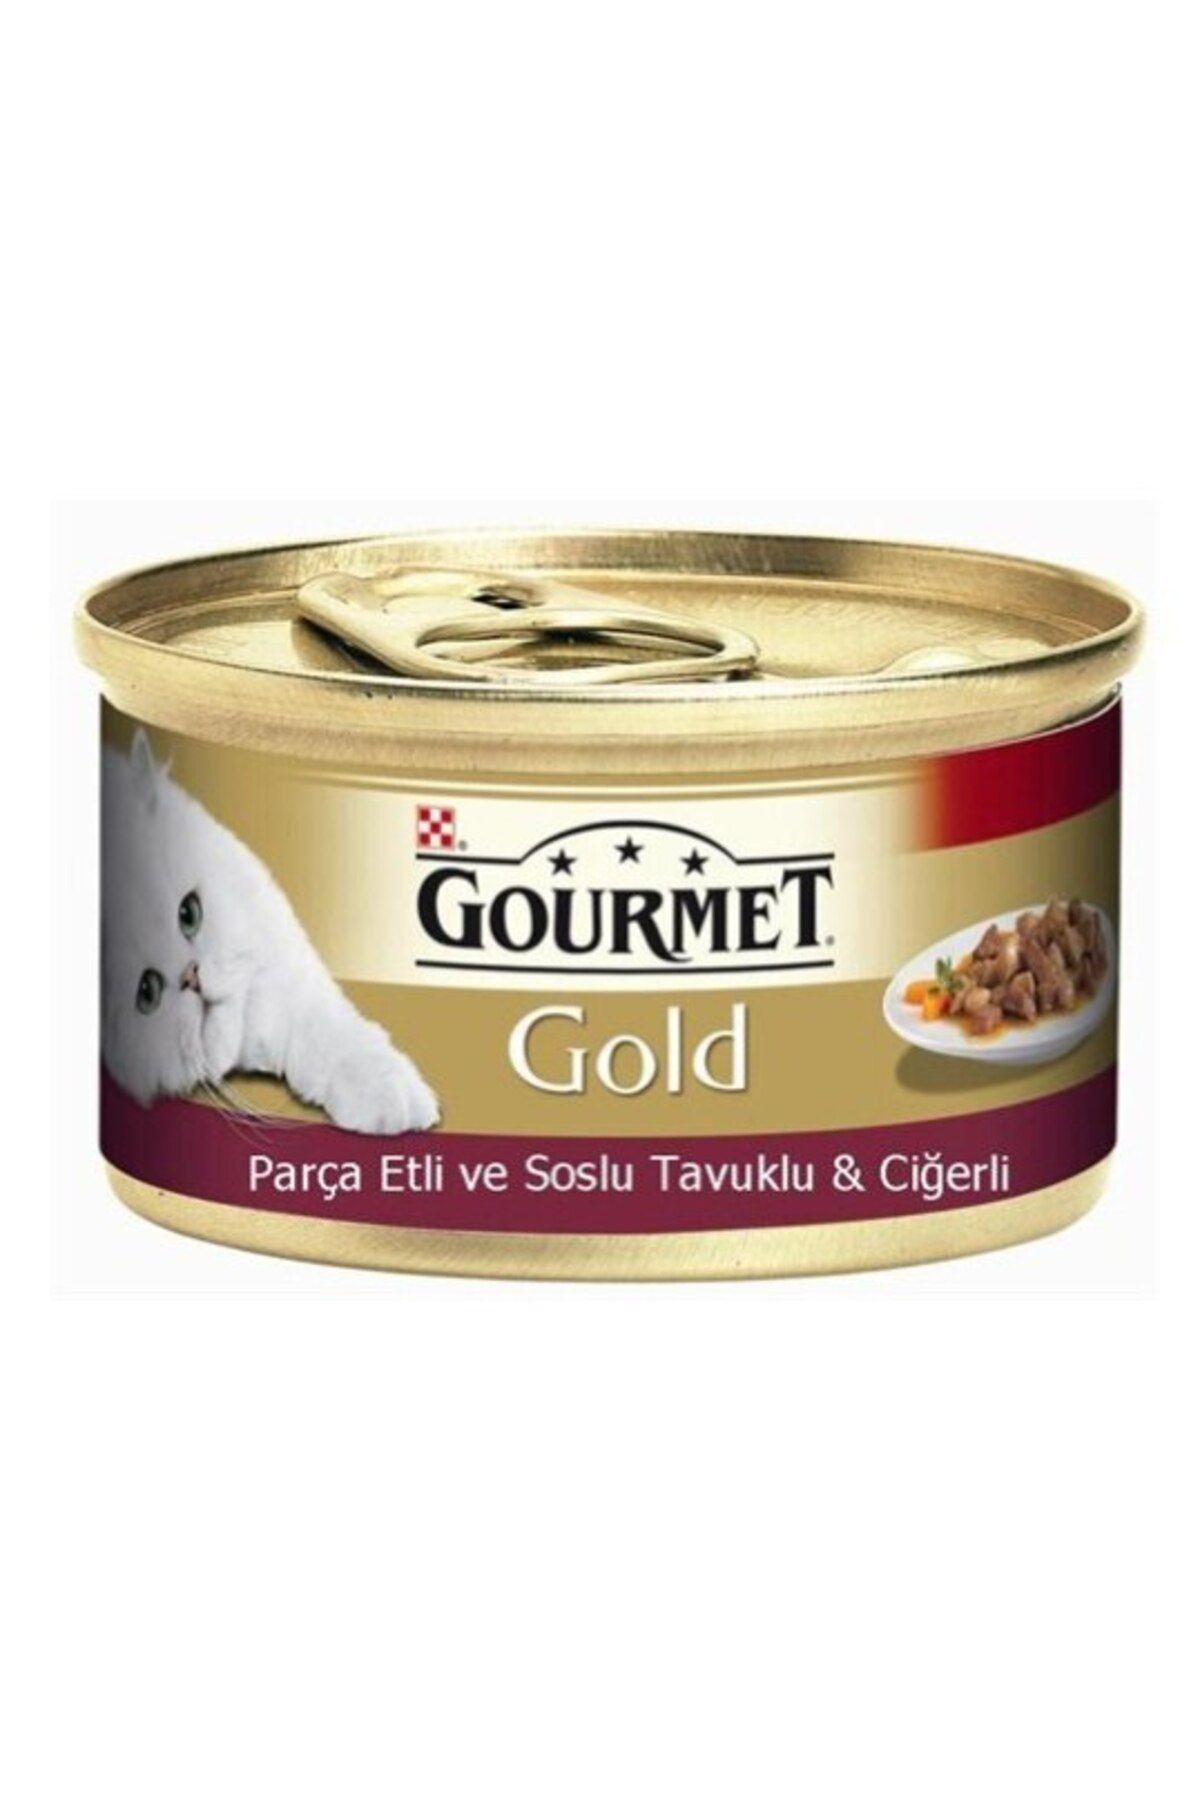 Gourmet Gold Parça Etli Soslu Tavuklu Ciğerli Kedi Konserve 85 gr X 24 Adet